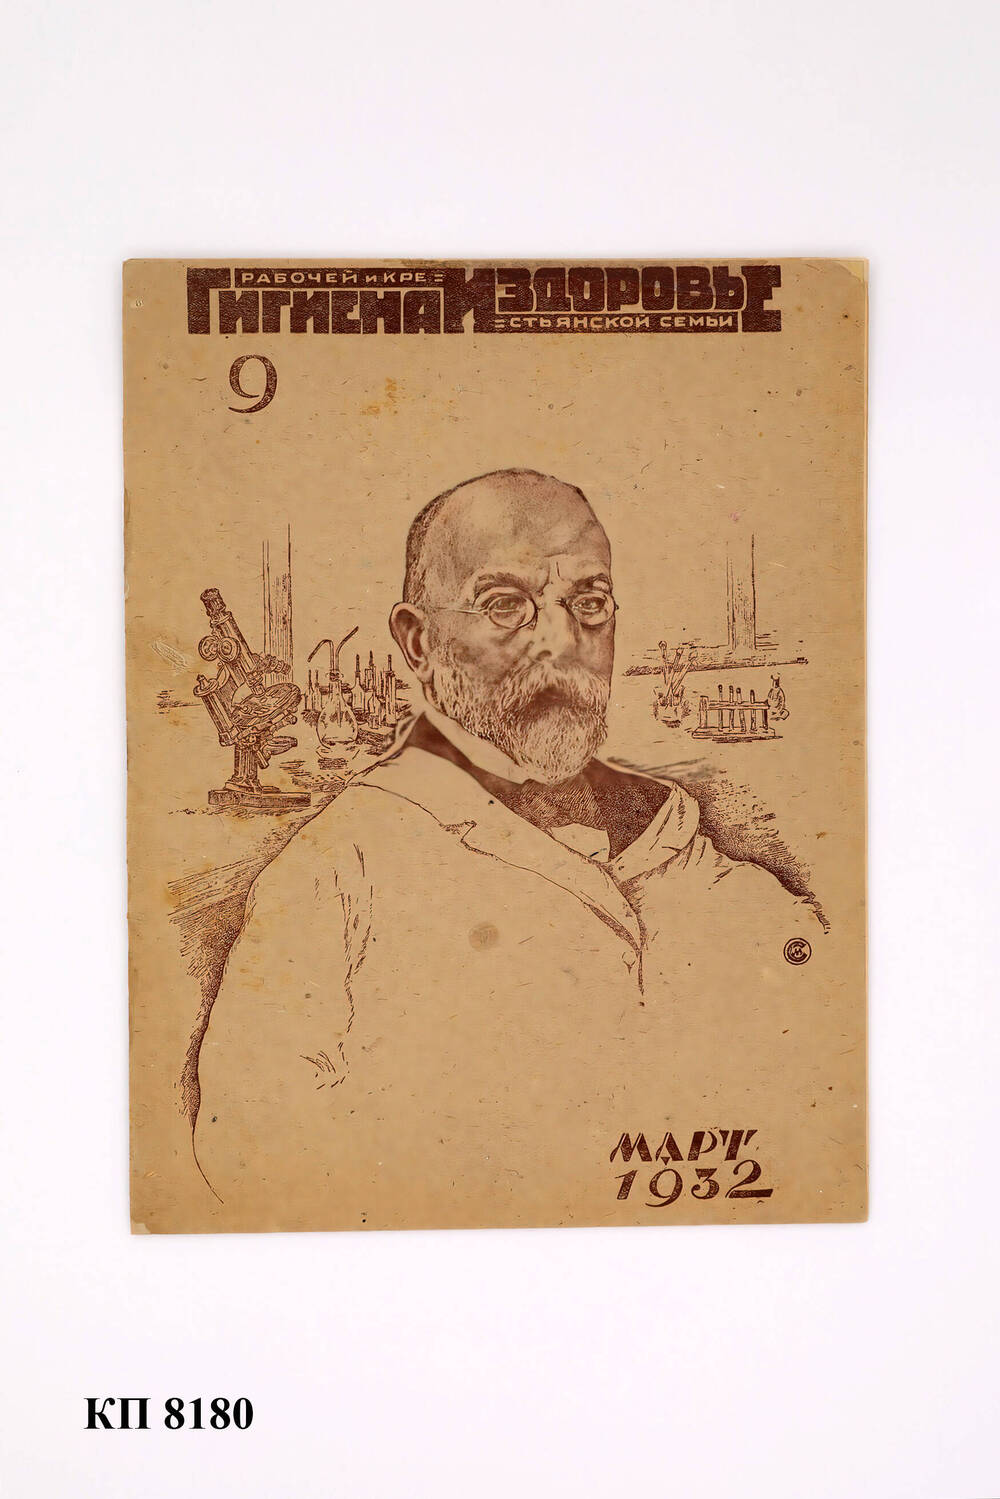 Журнал «Гигиена и здоровье рабочей и крестьянской семьи» № 9 март 1932 г.